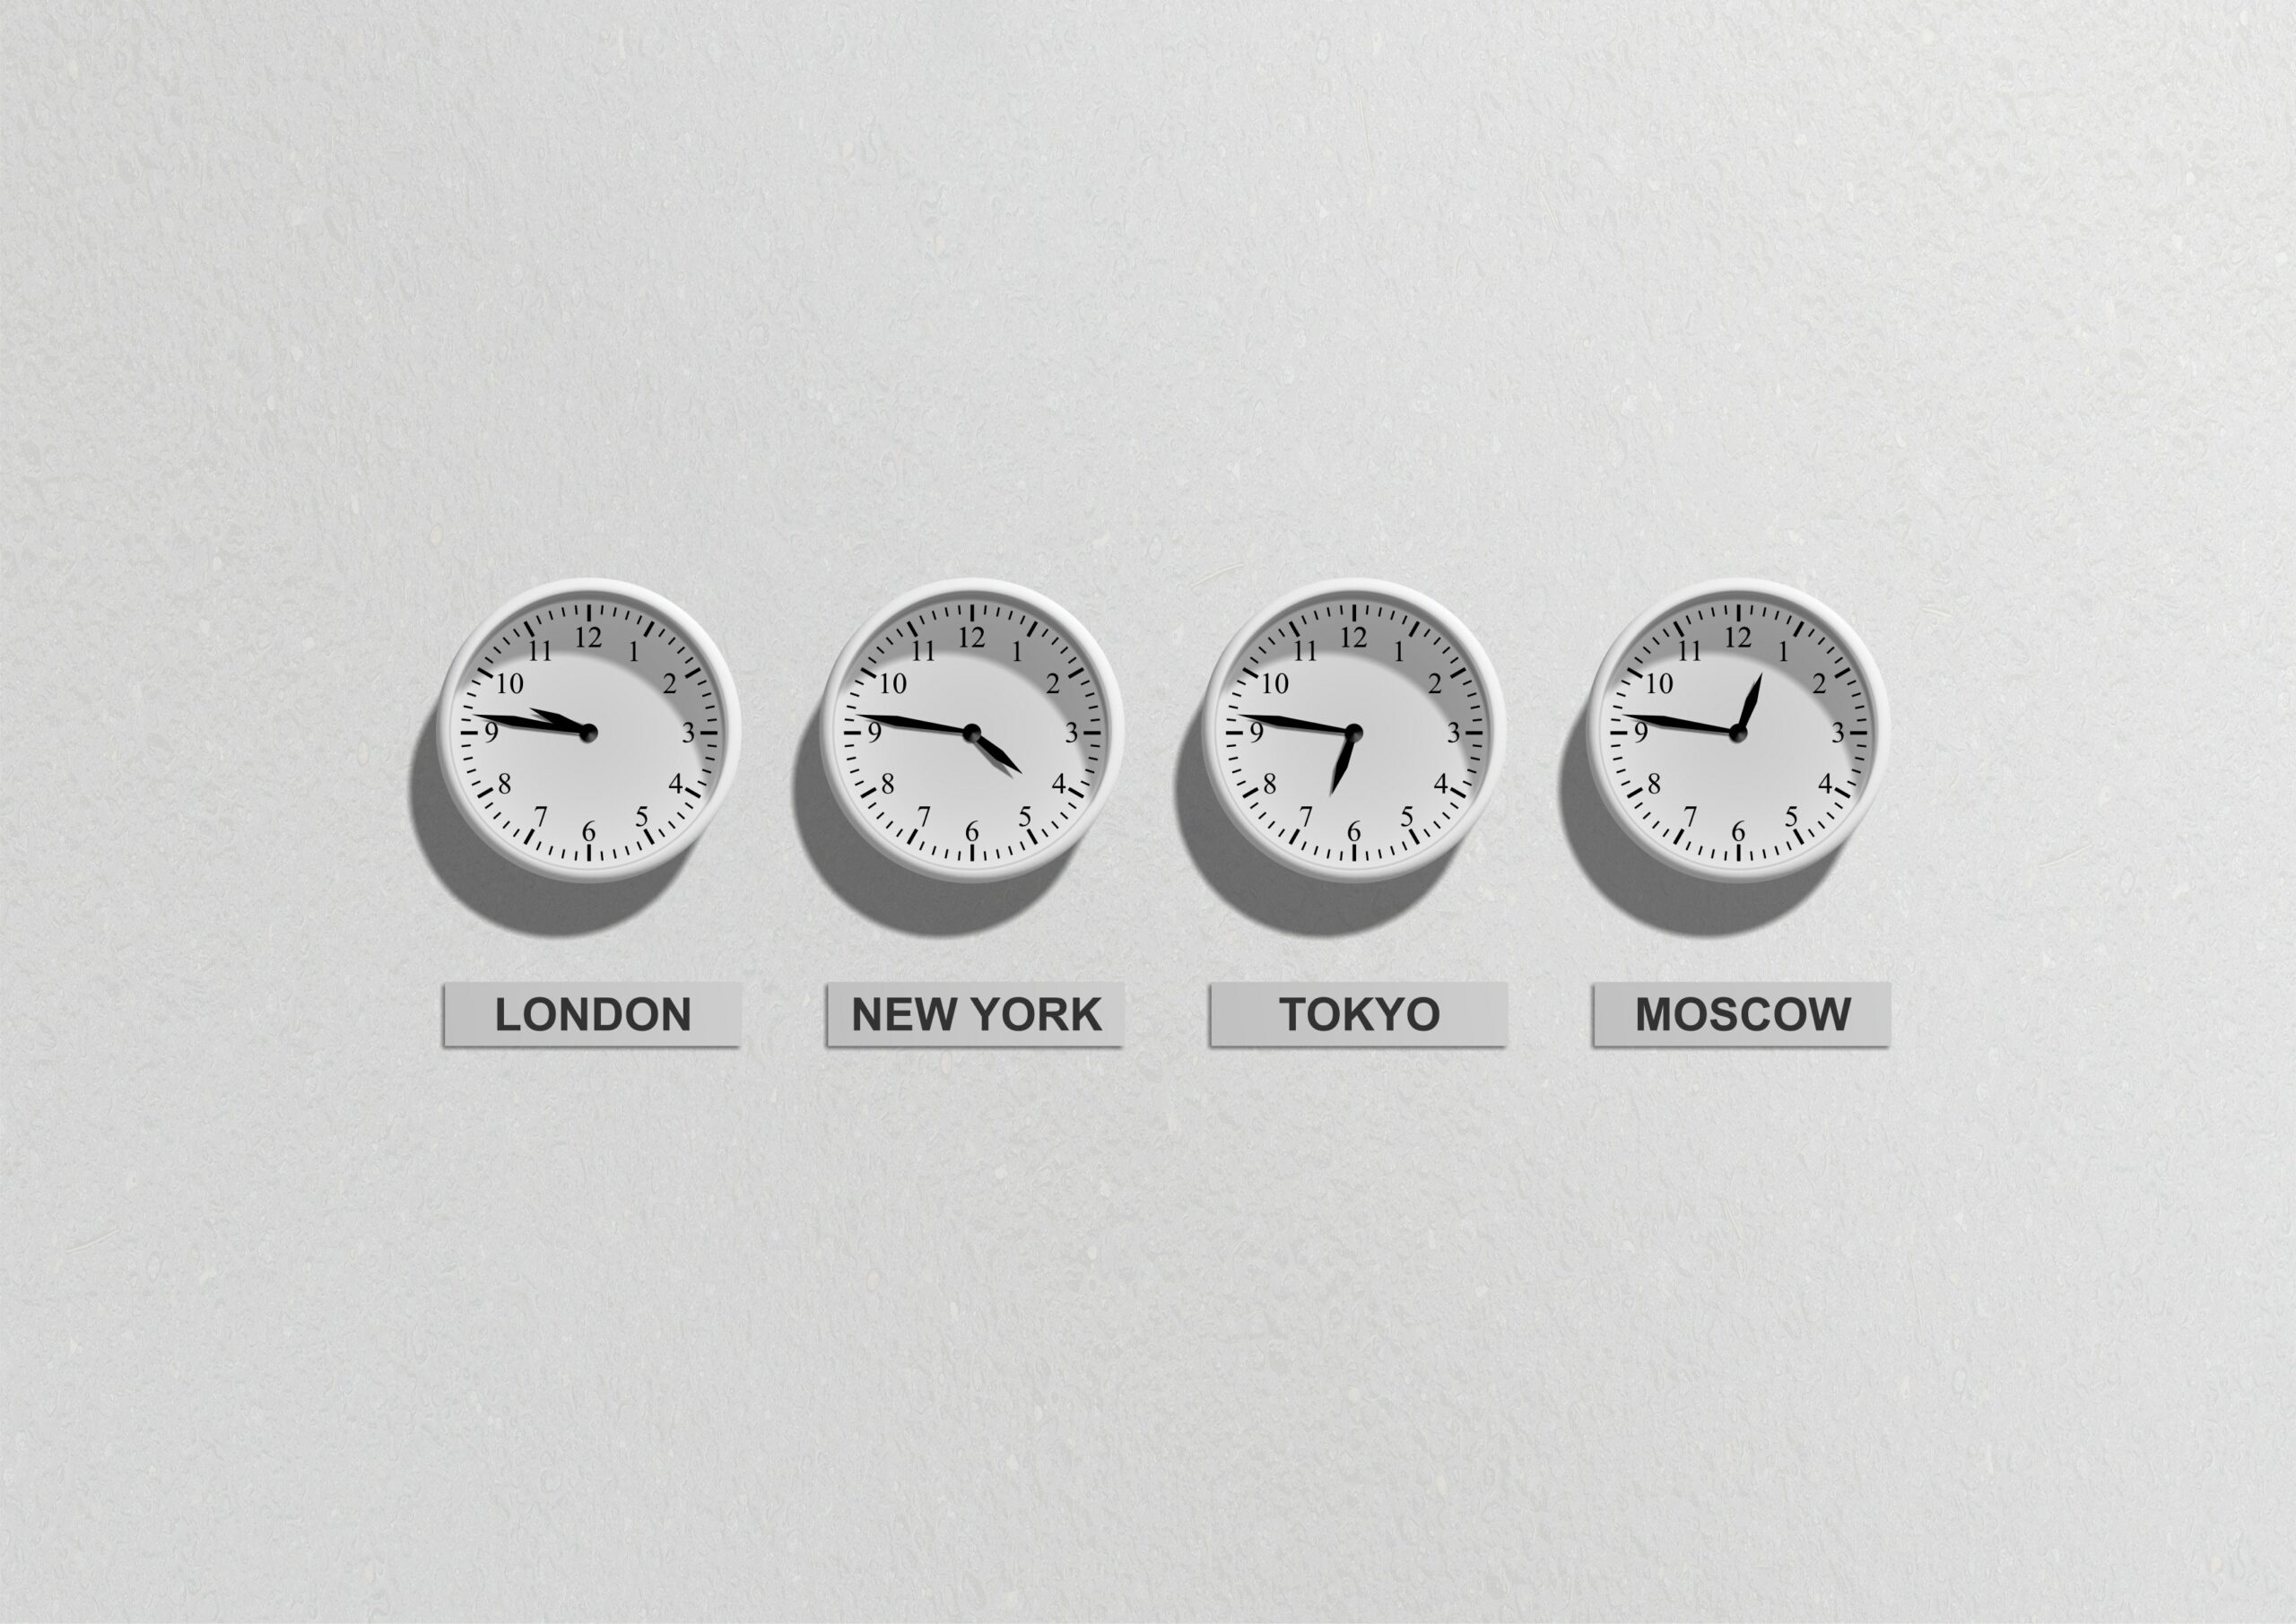 Weiße Wand, an der vier Uhren hängen. Sie zeigen unterschiedliche Uhrzeiten an und darunter hängt jeweils ein Schild mit der dazugehörigen Stadt.